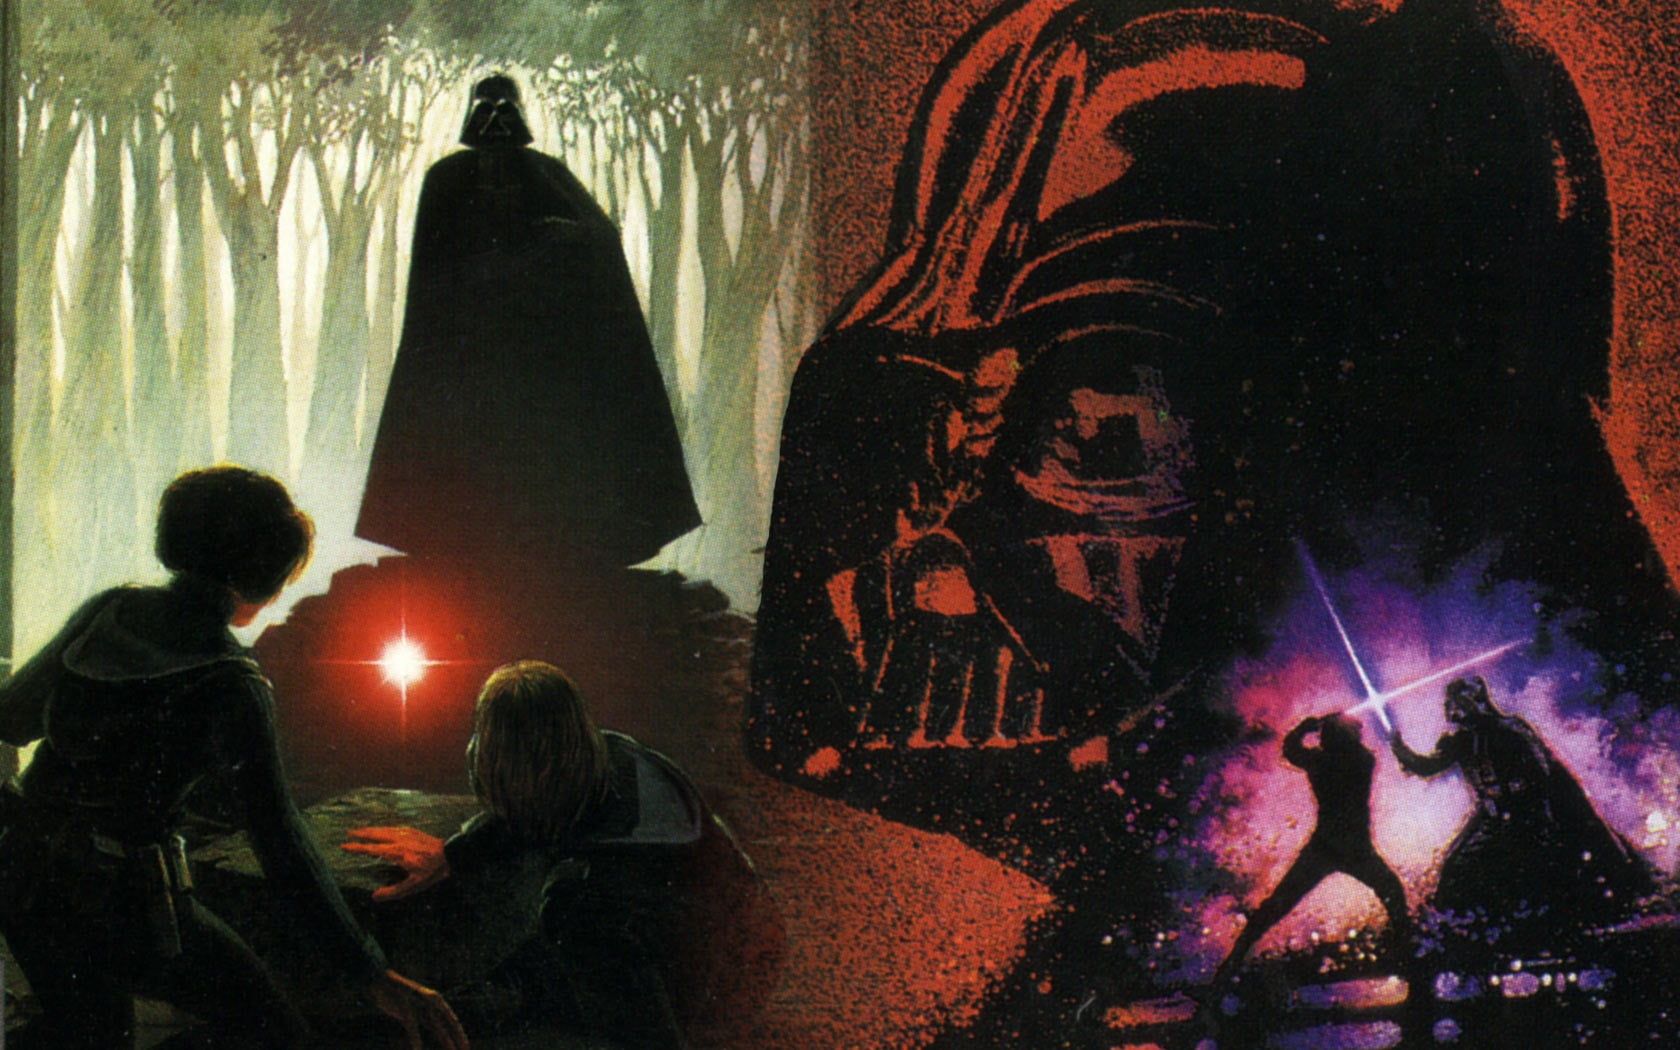 Star Wars Darth Vader wallpaper, Star Wars, science fiction